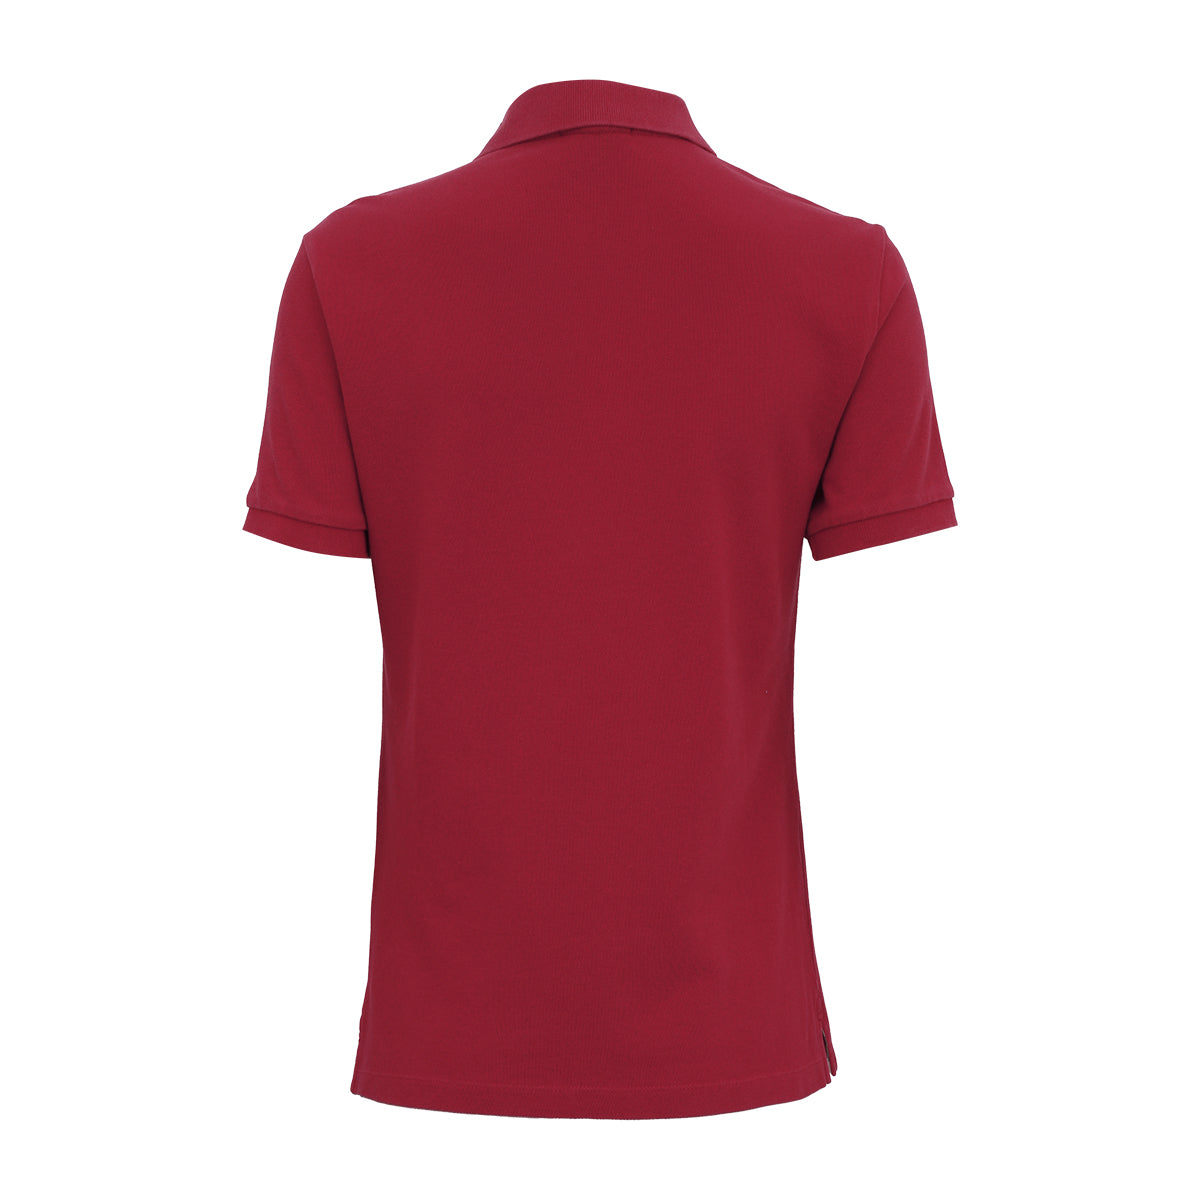 Camiseta Polo Burberry Vermelha Masculina Tam. PP Br